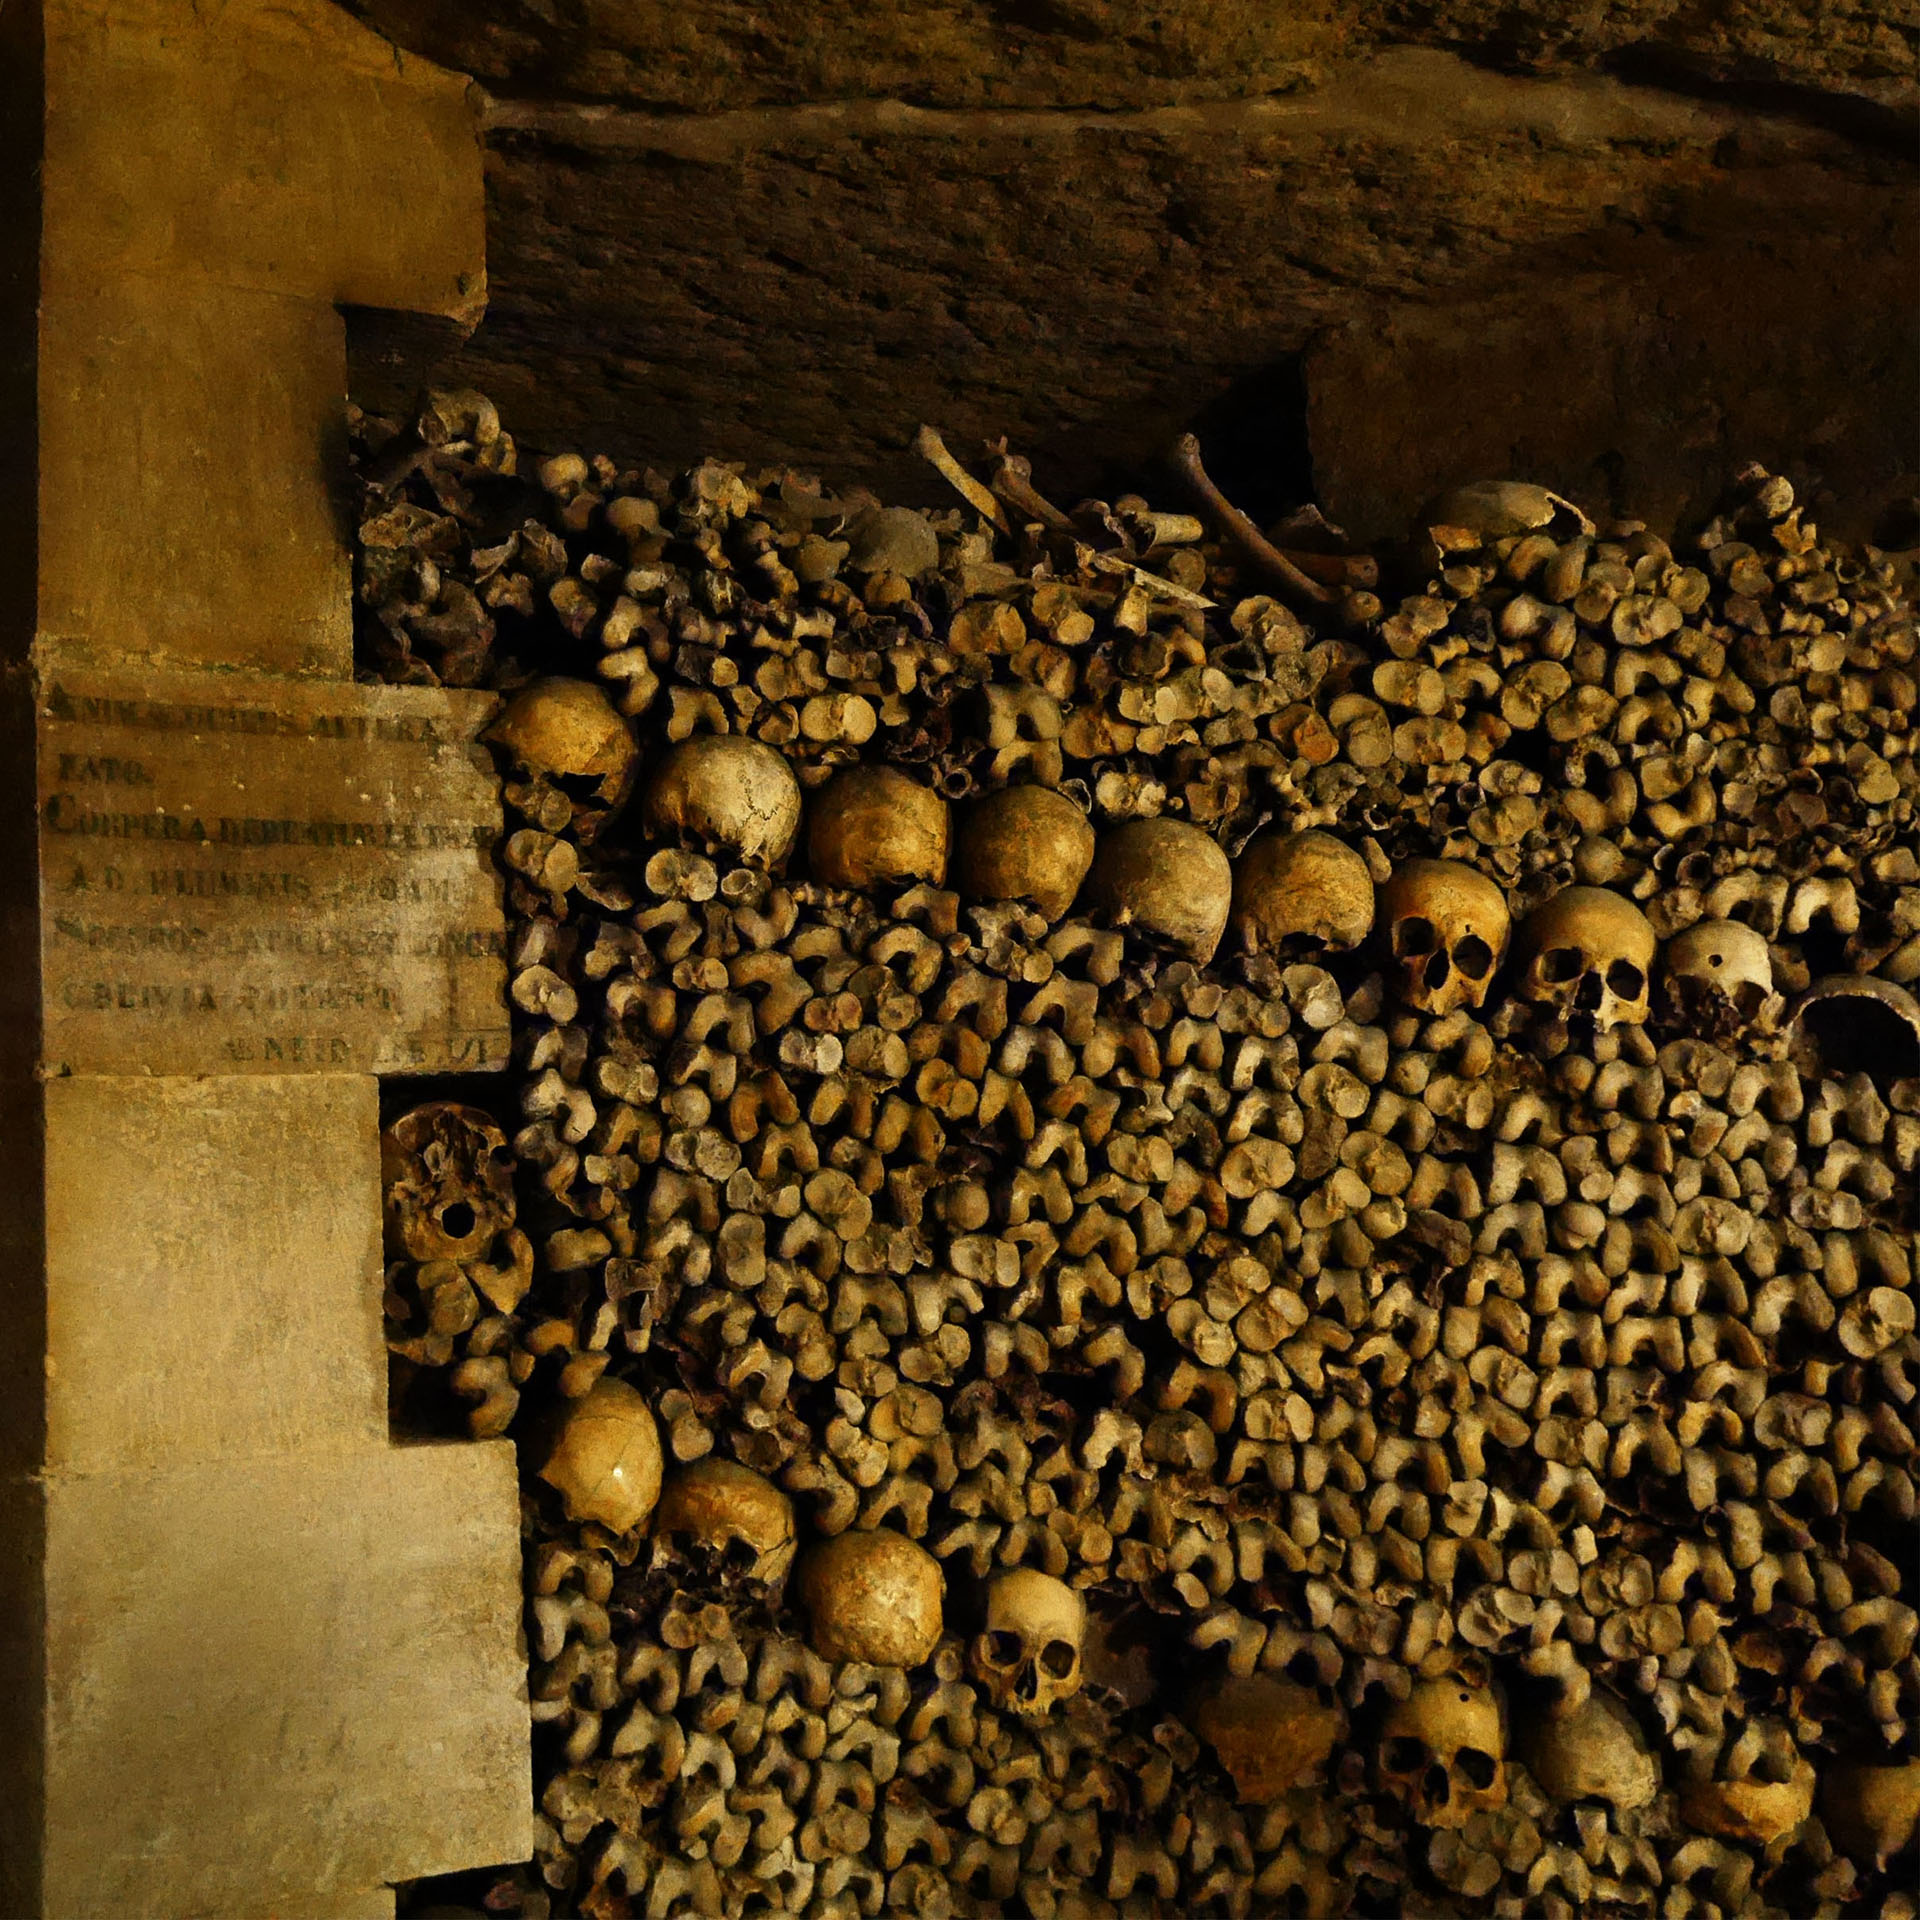 Os et crânes dans les catacombes de Paris France Skull and bones in Paris Catacombs France